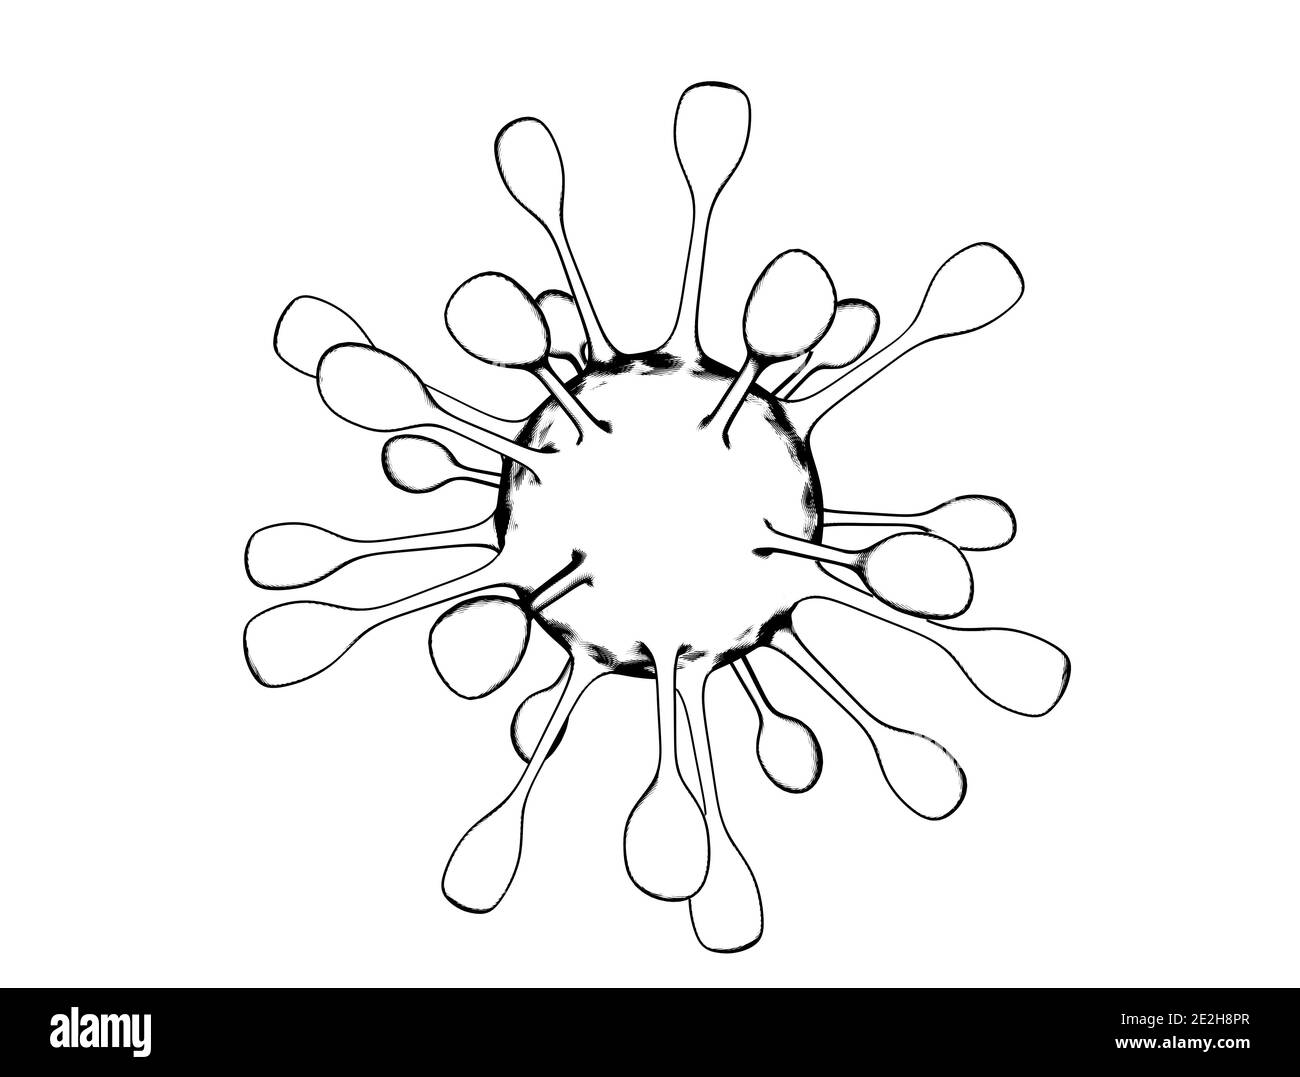 Disegno di cellule del virus isolato su sfondo bianco. Immagine 3D di Coronavirus Covid-19 Foto Stock